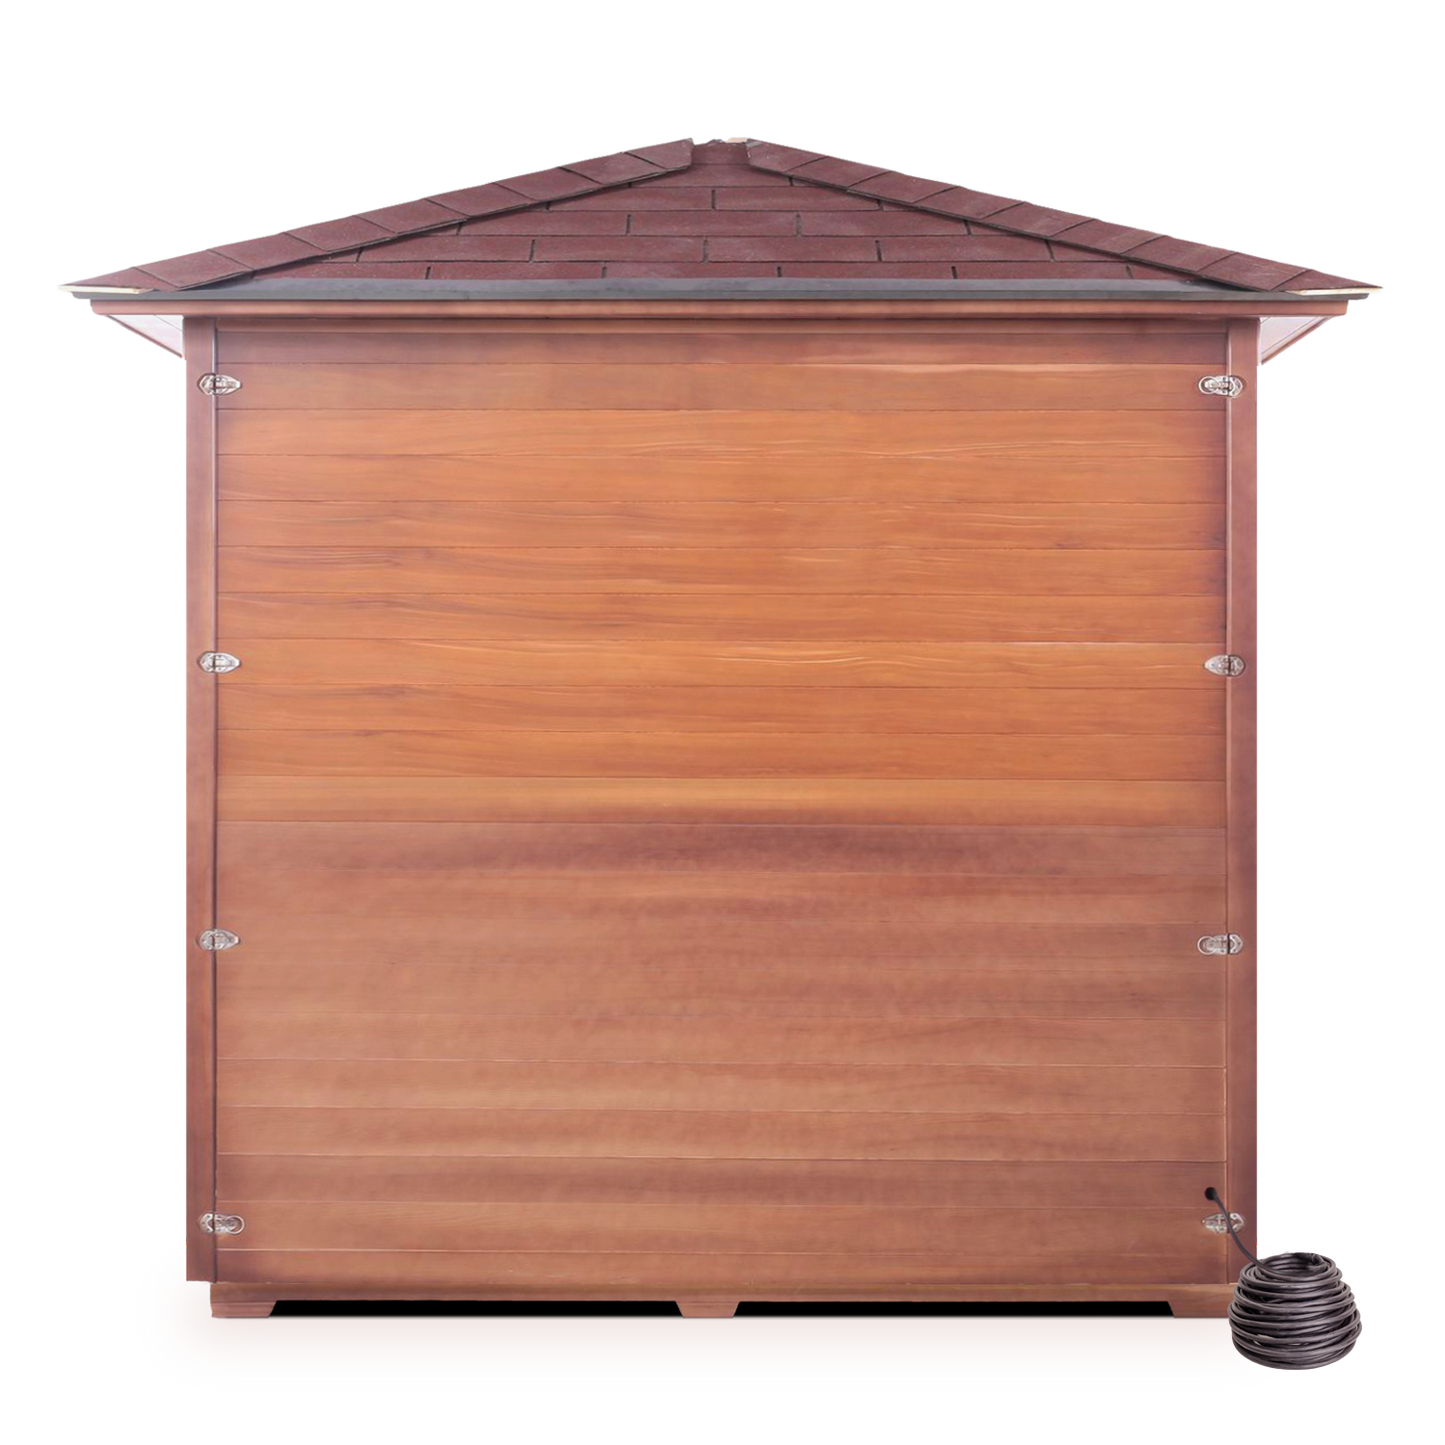 Enlighten Sauna - SunRise 5 Dry Traditional Indoor or Outdoor Sauna